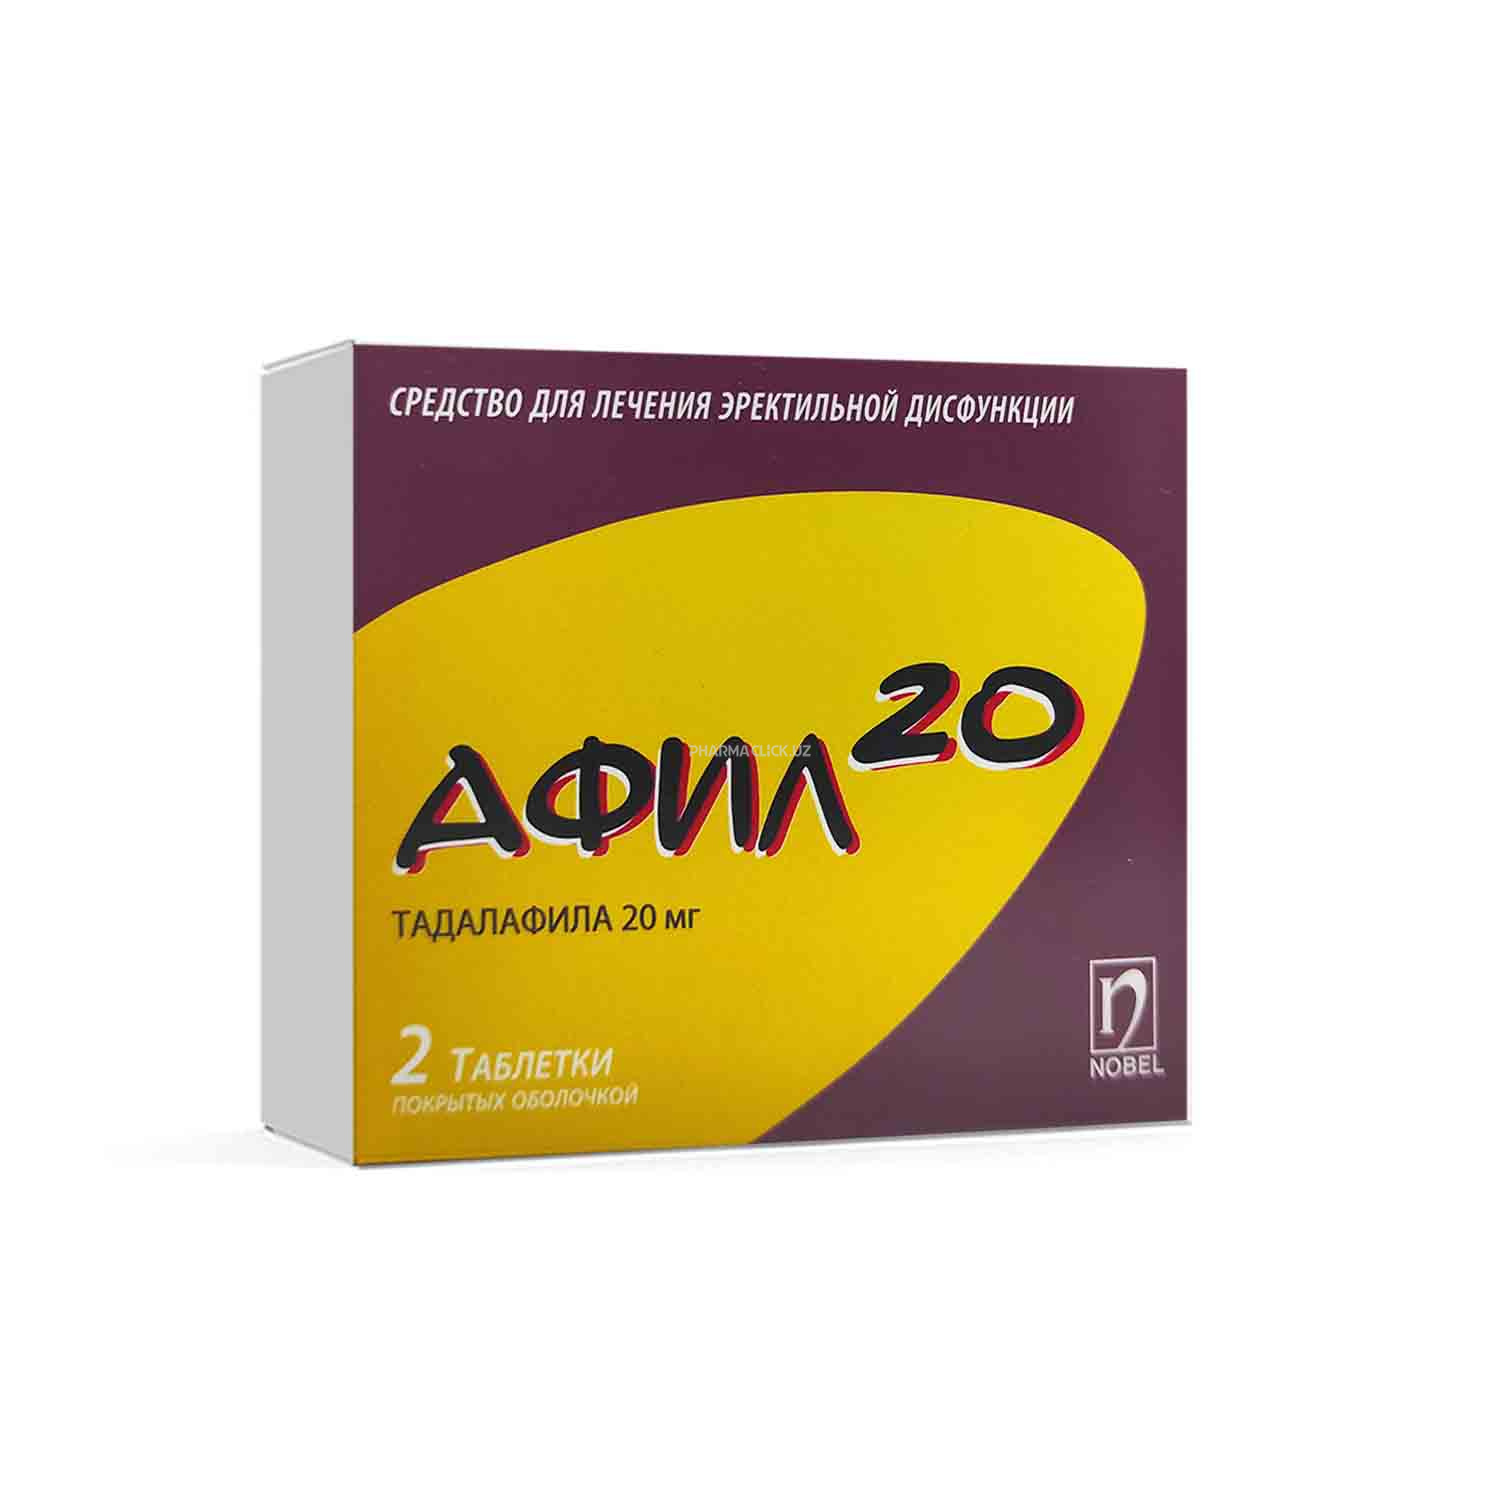 Afil 20 mg tab. №2